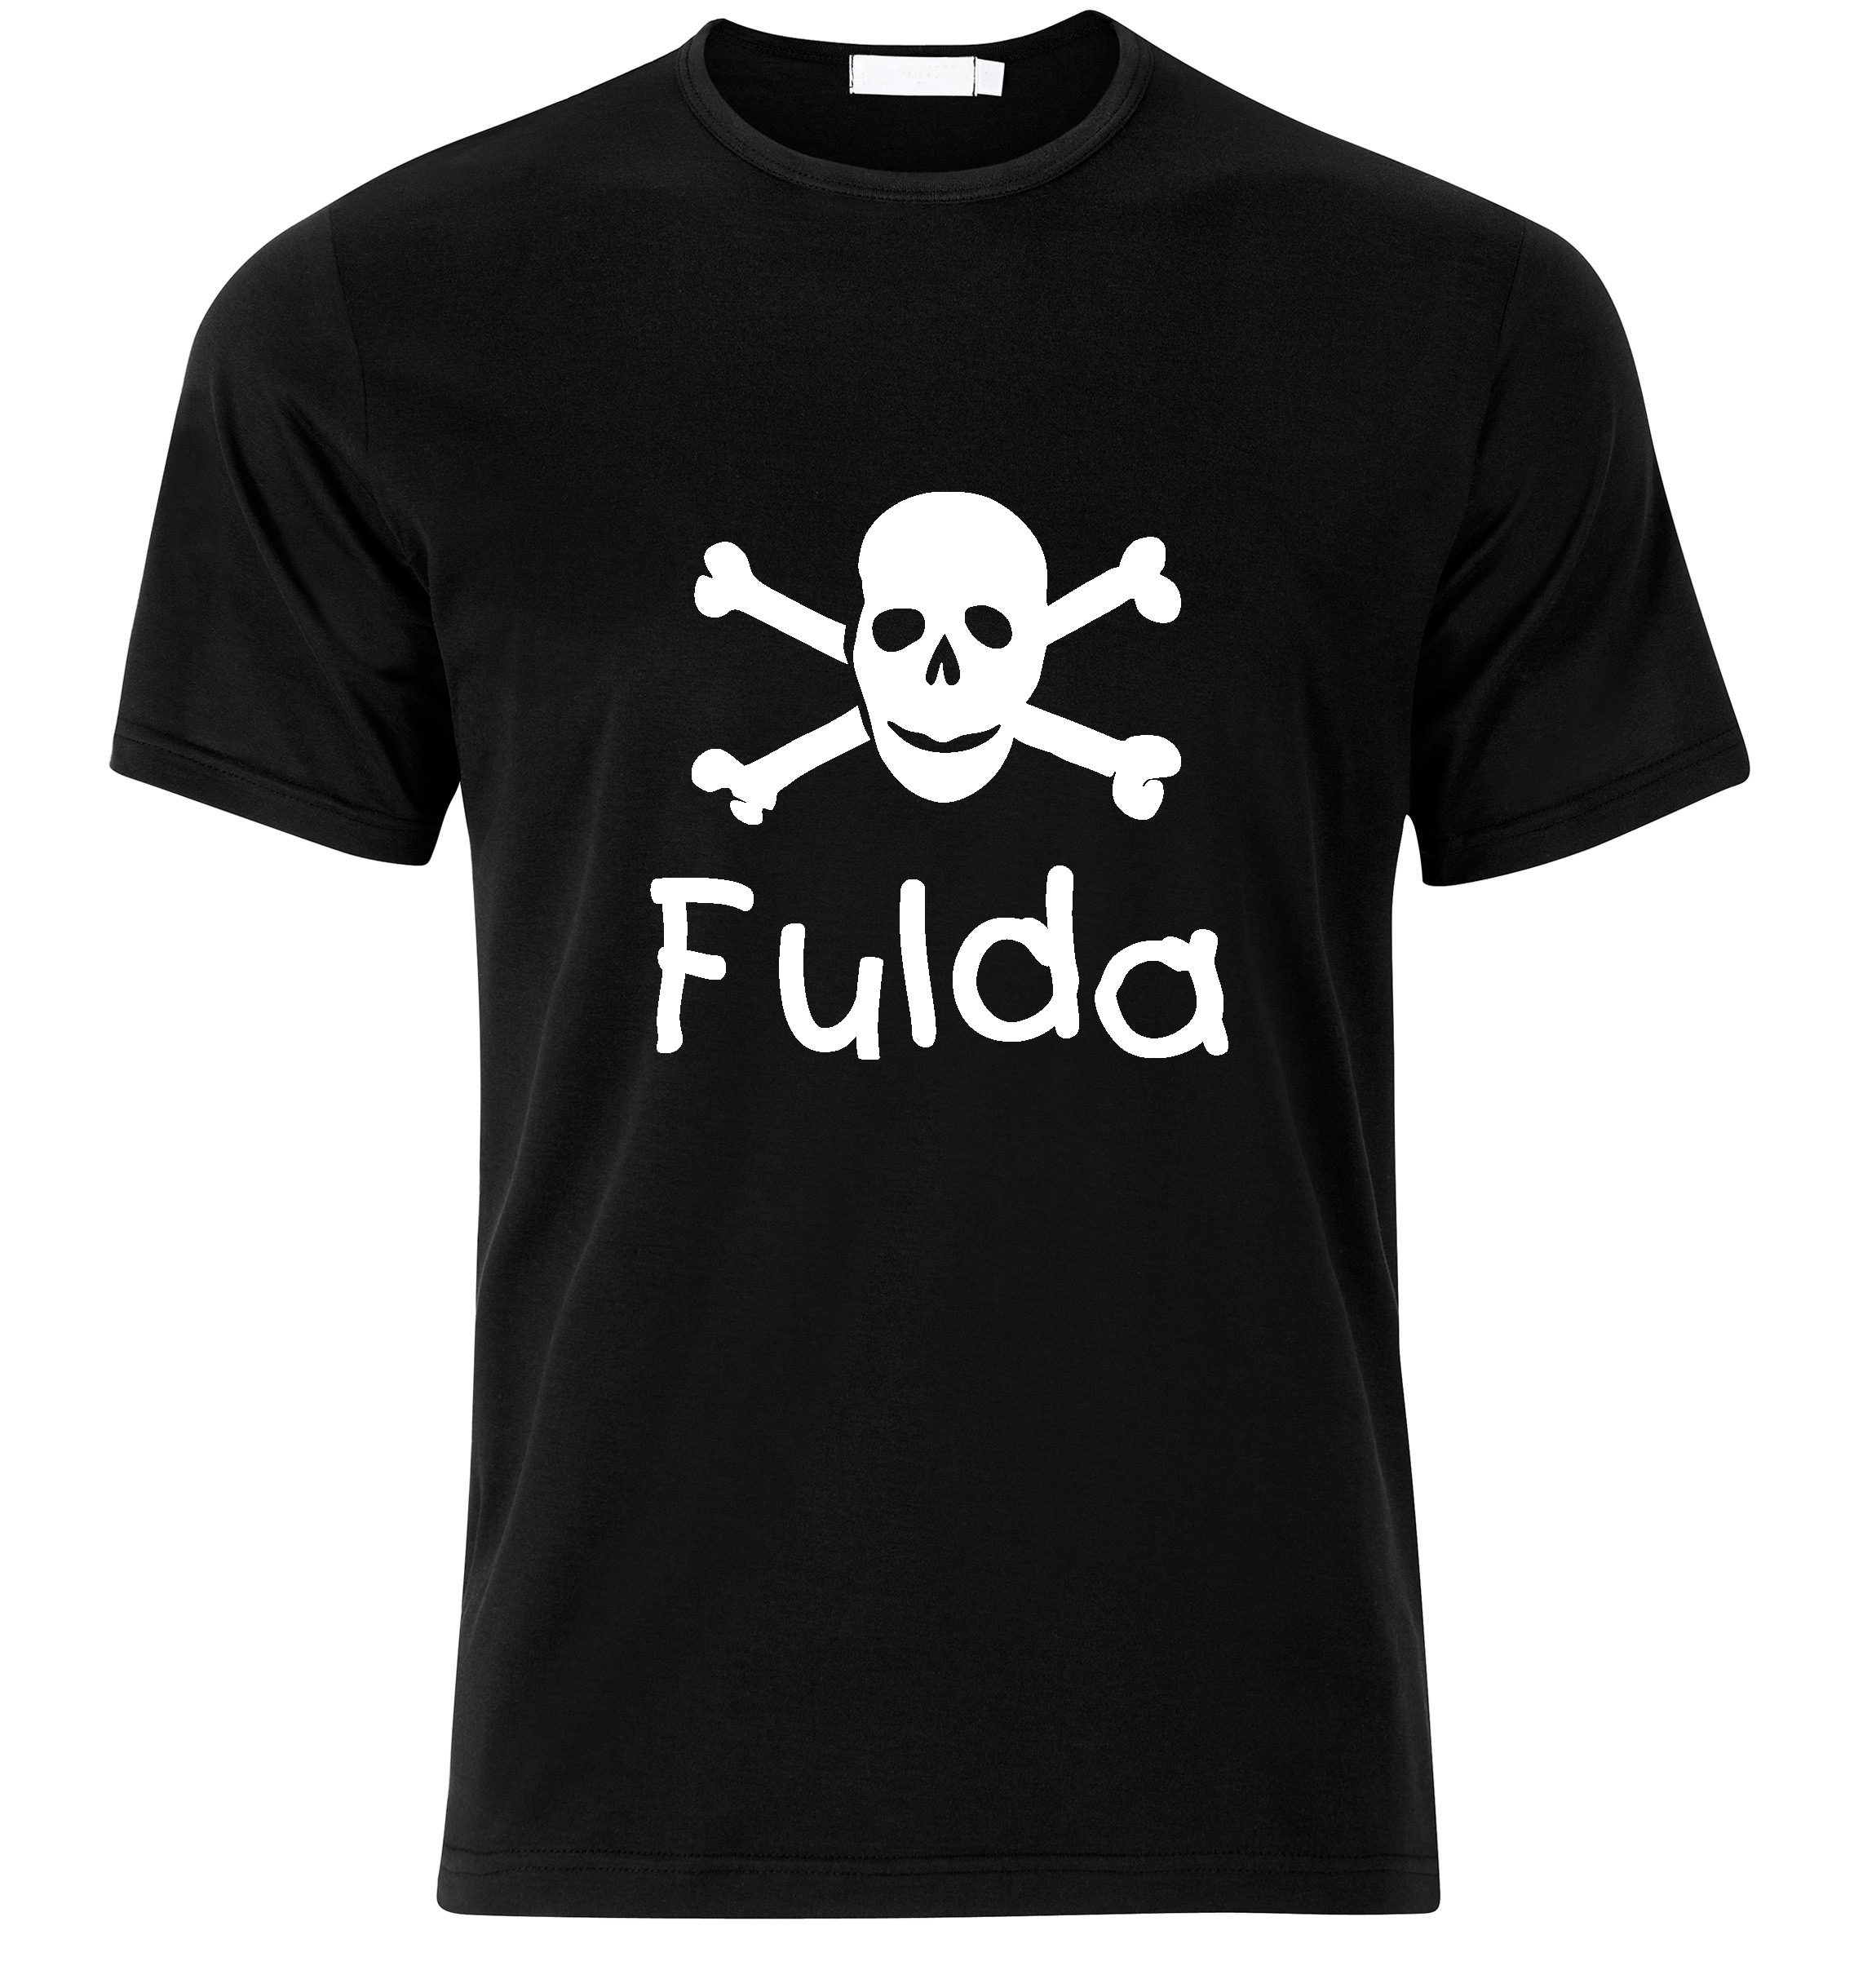 T-Shirt Fulda Jolly Roger, Totenkopf